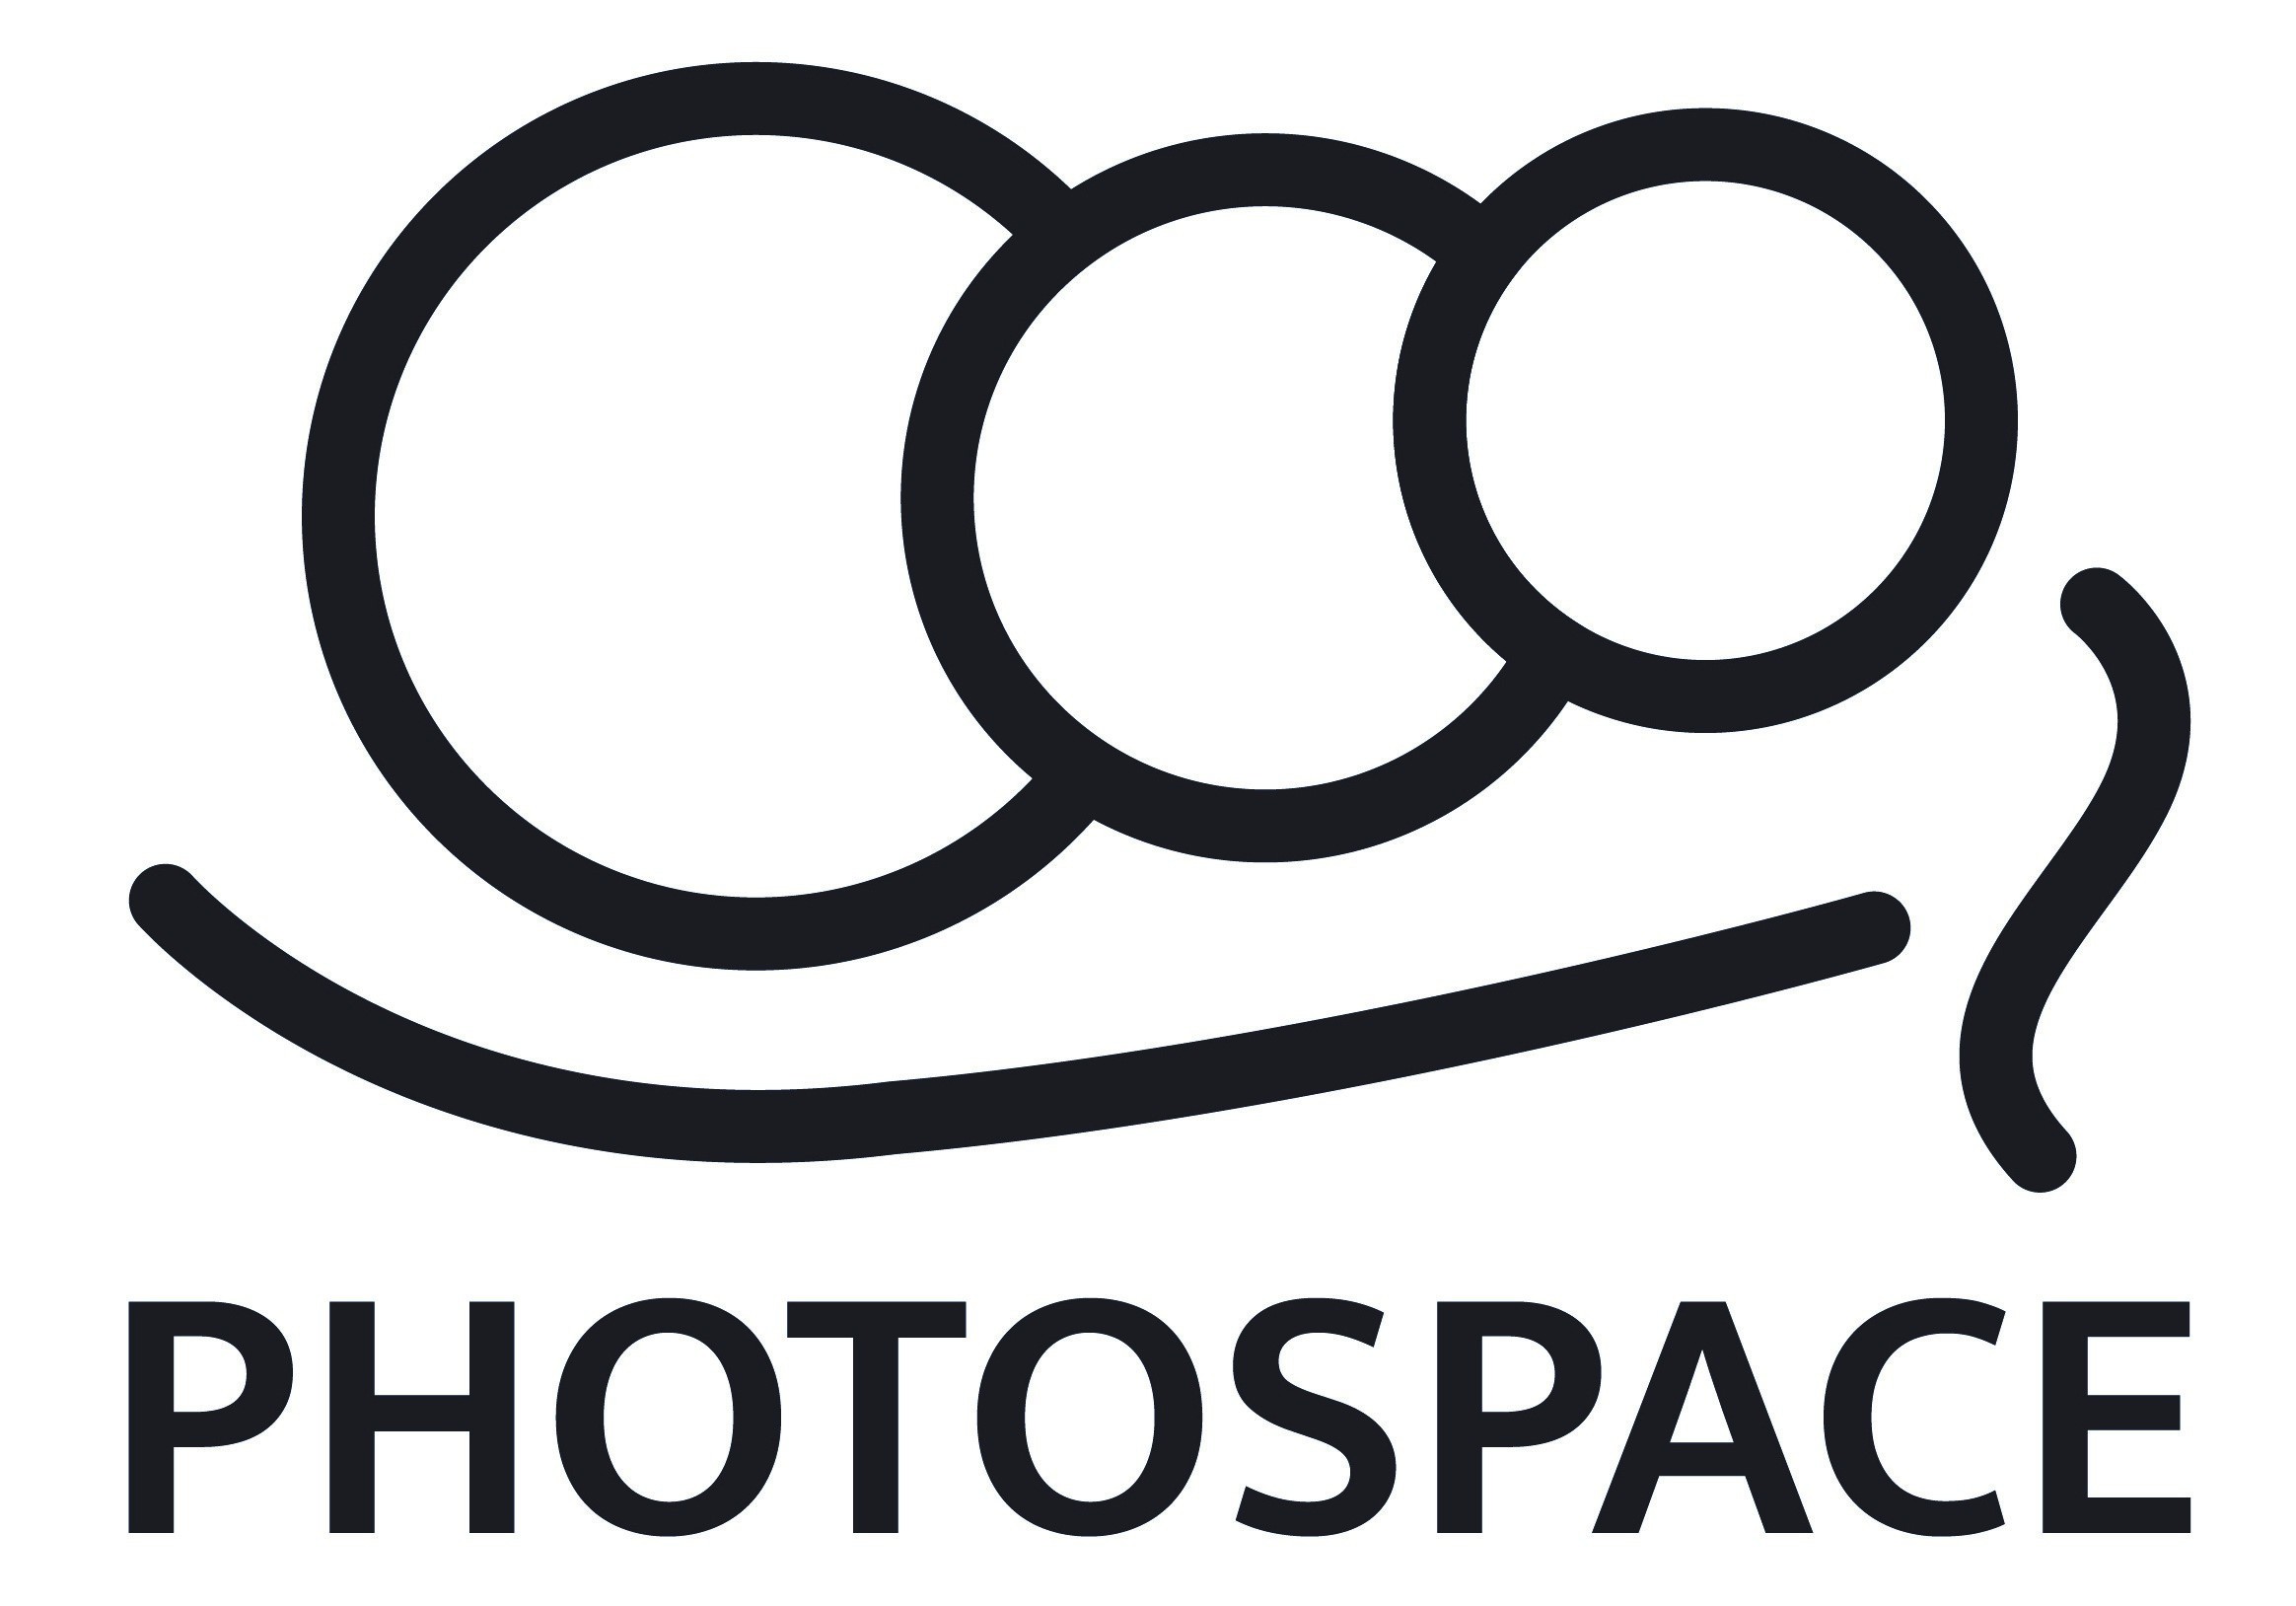 Photospace